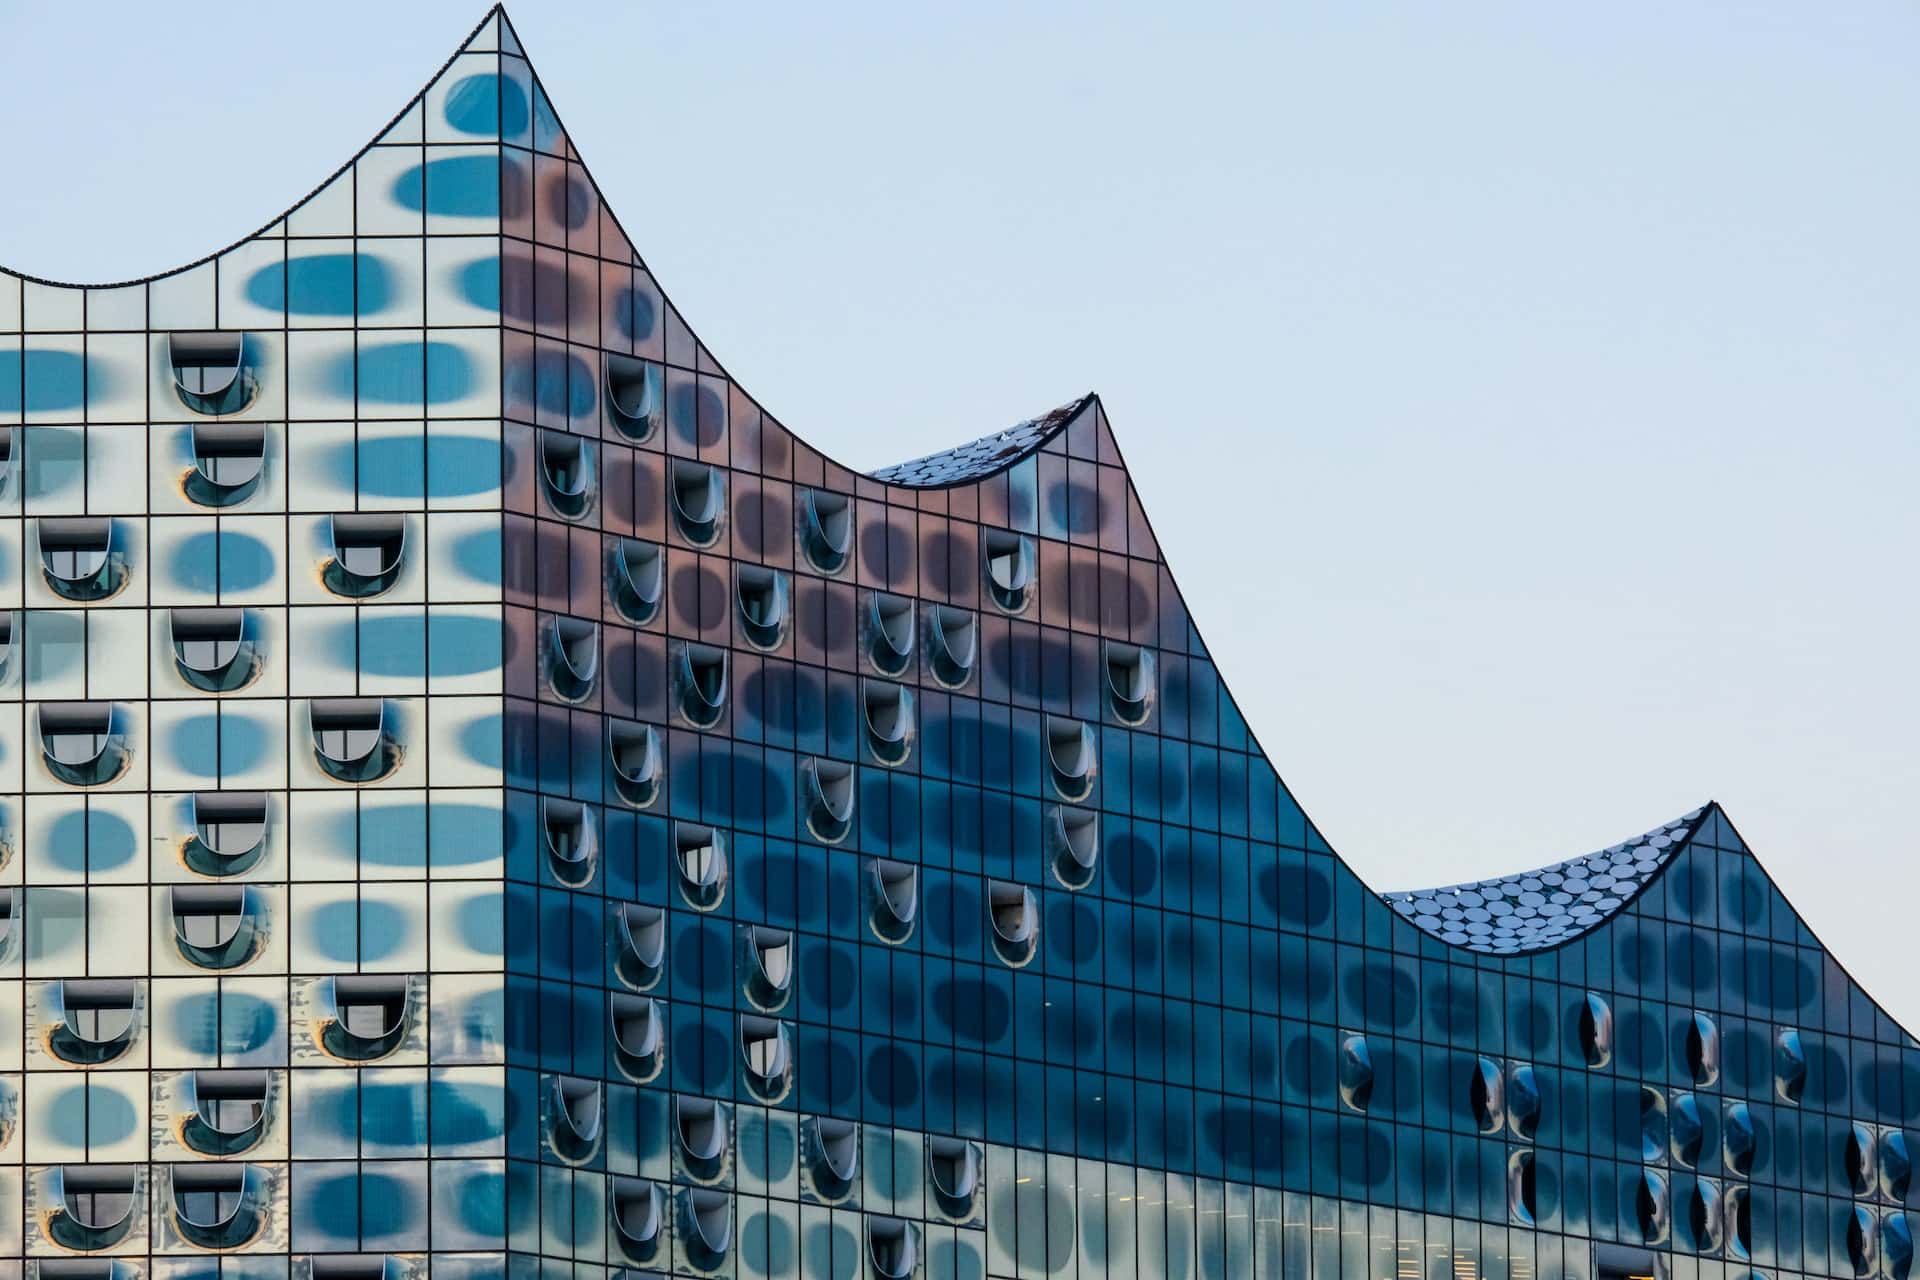 Con la Elbphilharmonie como principal atracción, HafenCity es un barrio recientemente revitalizado lleno de arquitectura moderna.